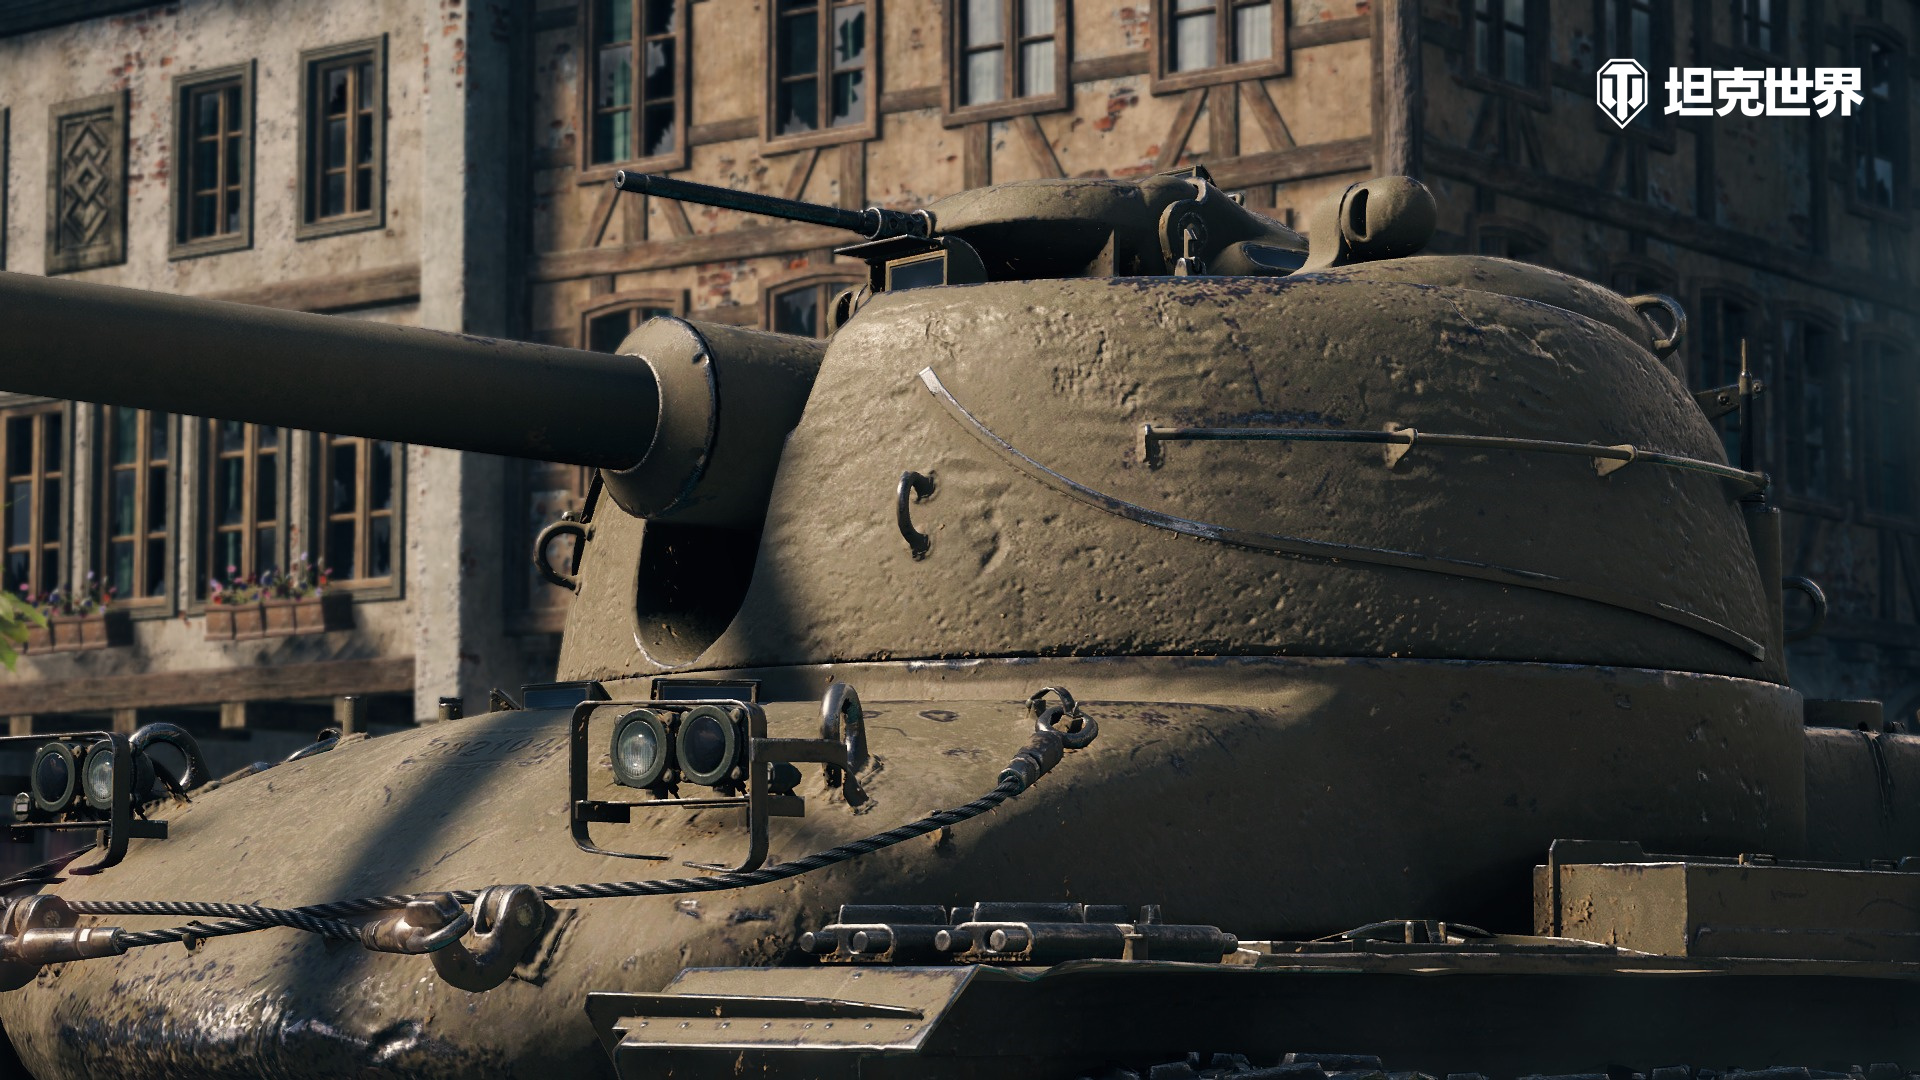 夺旗之战全面打响 坦克世界 顶级坦克7v7激斗赢豪礼